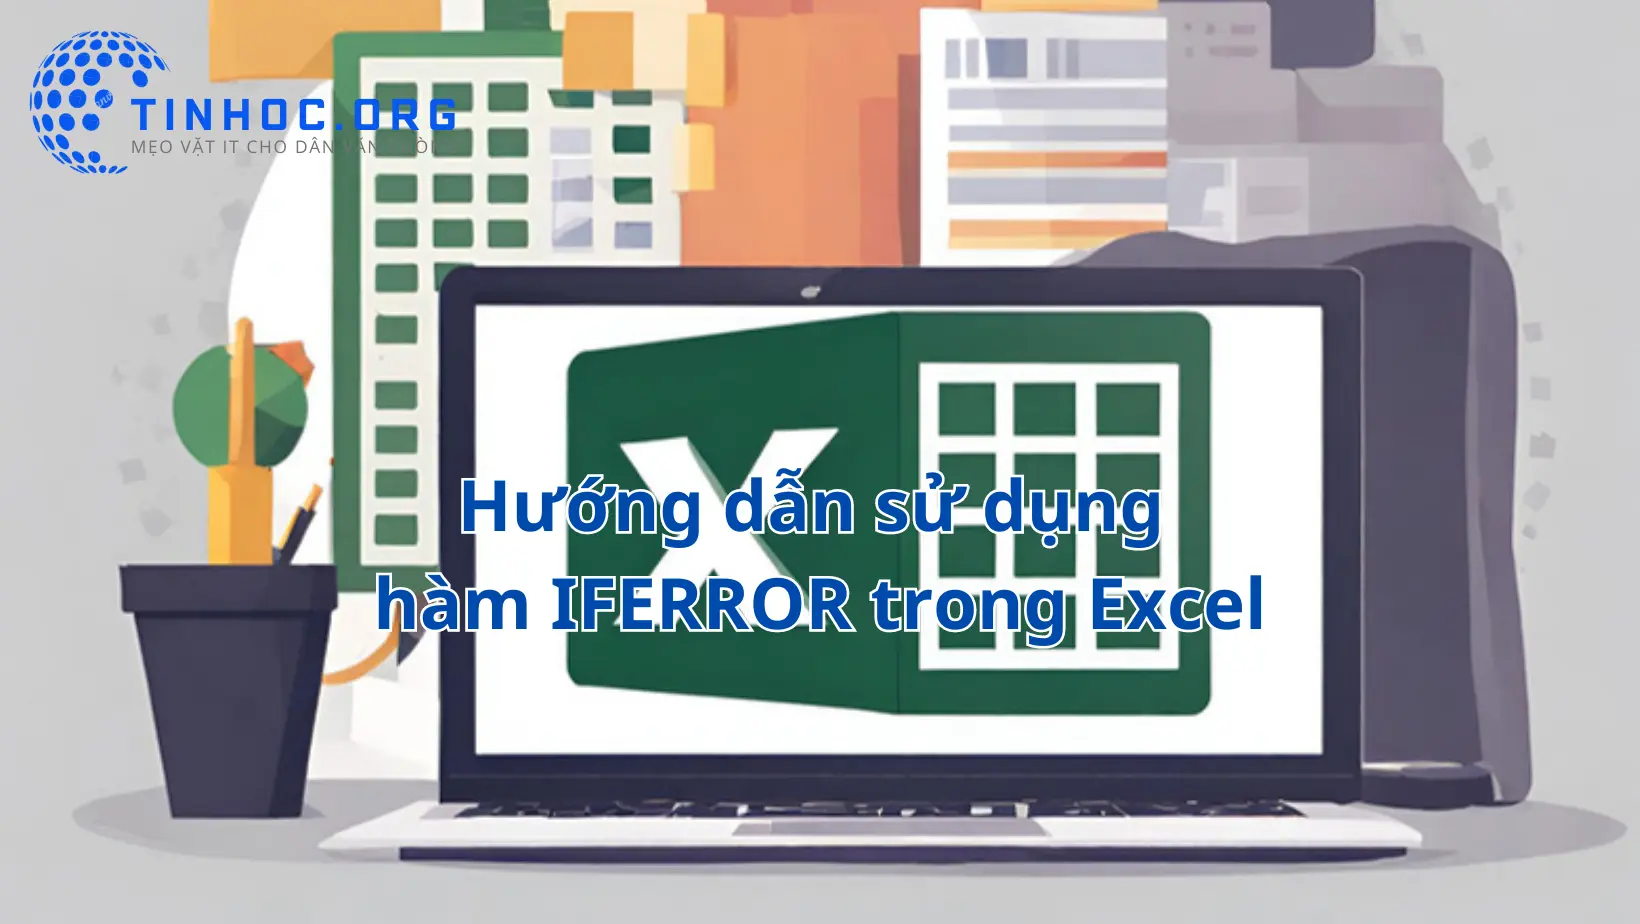 Hàm IFERROR trong Microsoft Excel là một công cụ mạnh mẽ cho phép bạn xử lý lỗi hoặc trạng thái không xác định trong các phép tính và công thức của bạn.